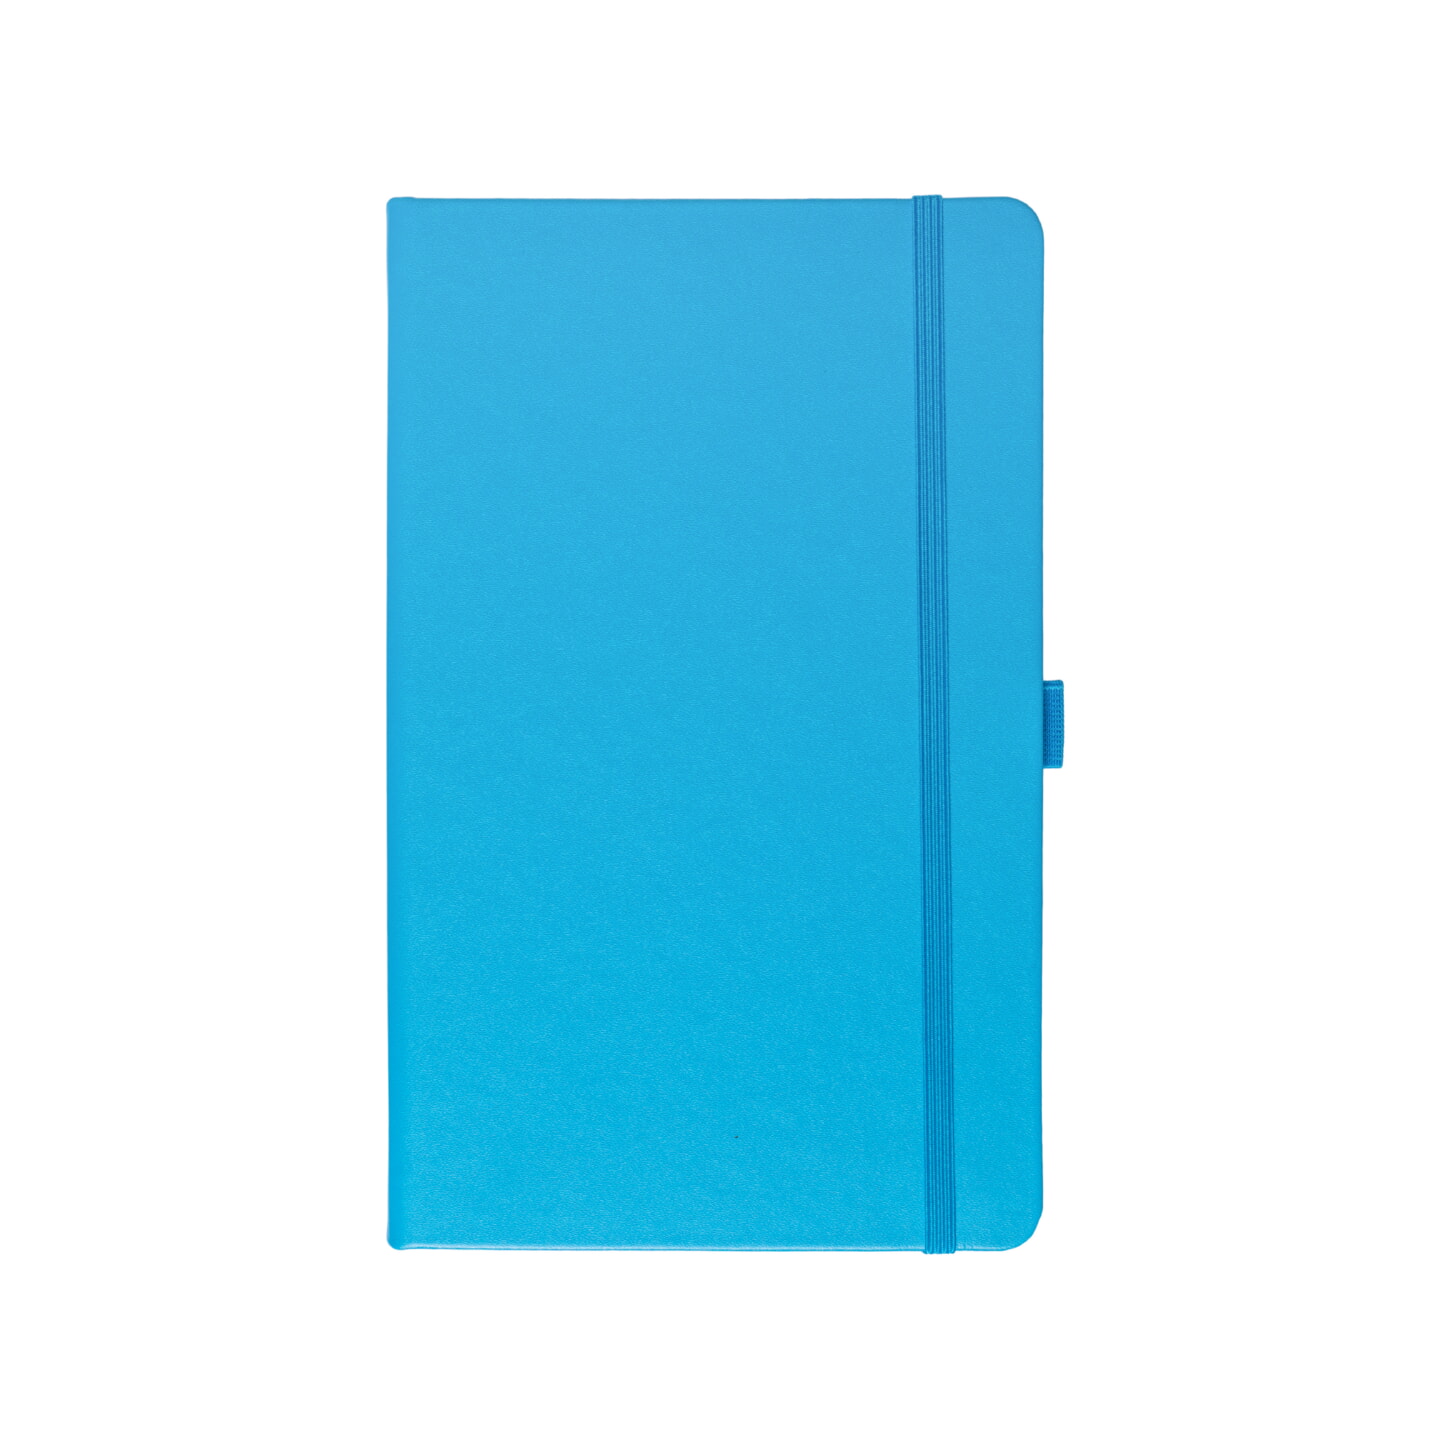 Блокнот для зарисовок Sketchmarker 140г/кв.м 9*14см 80л твердая обложка Синий Карибский